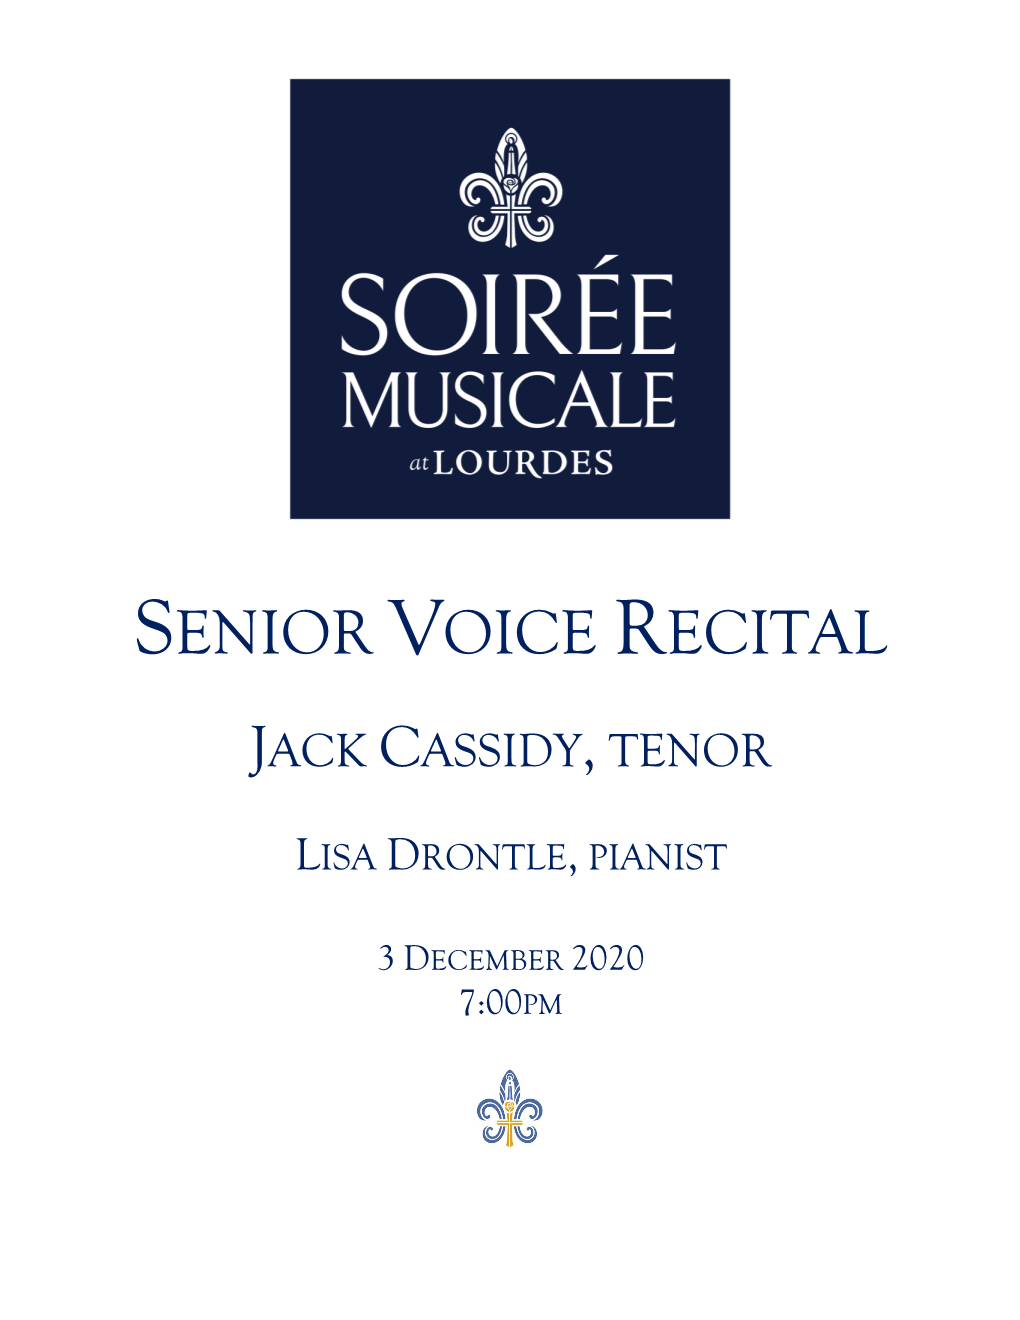 Senior Voice Recital